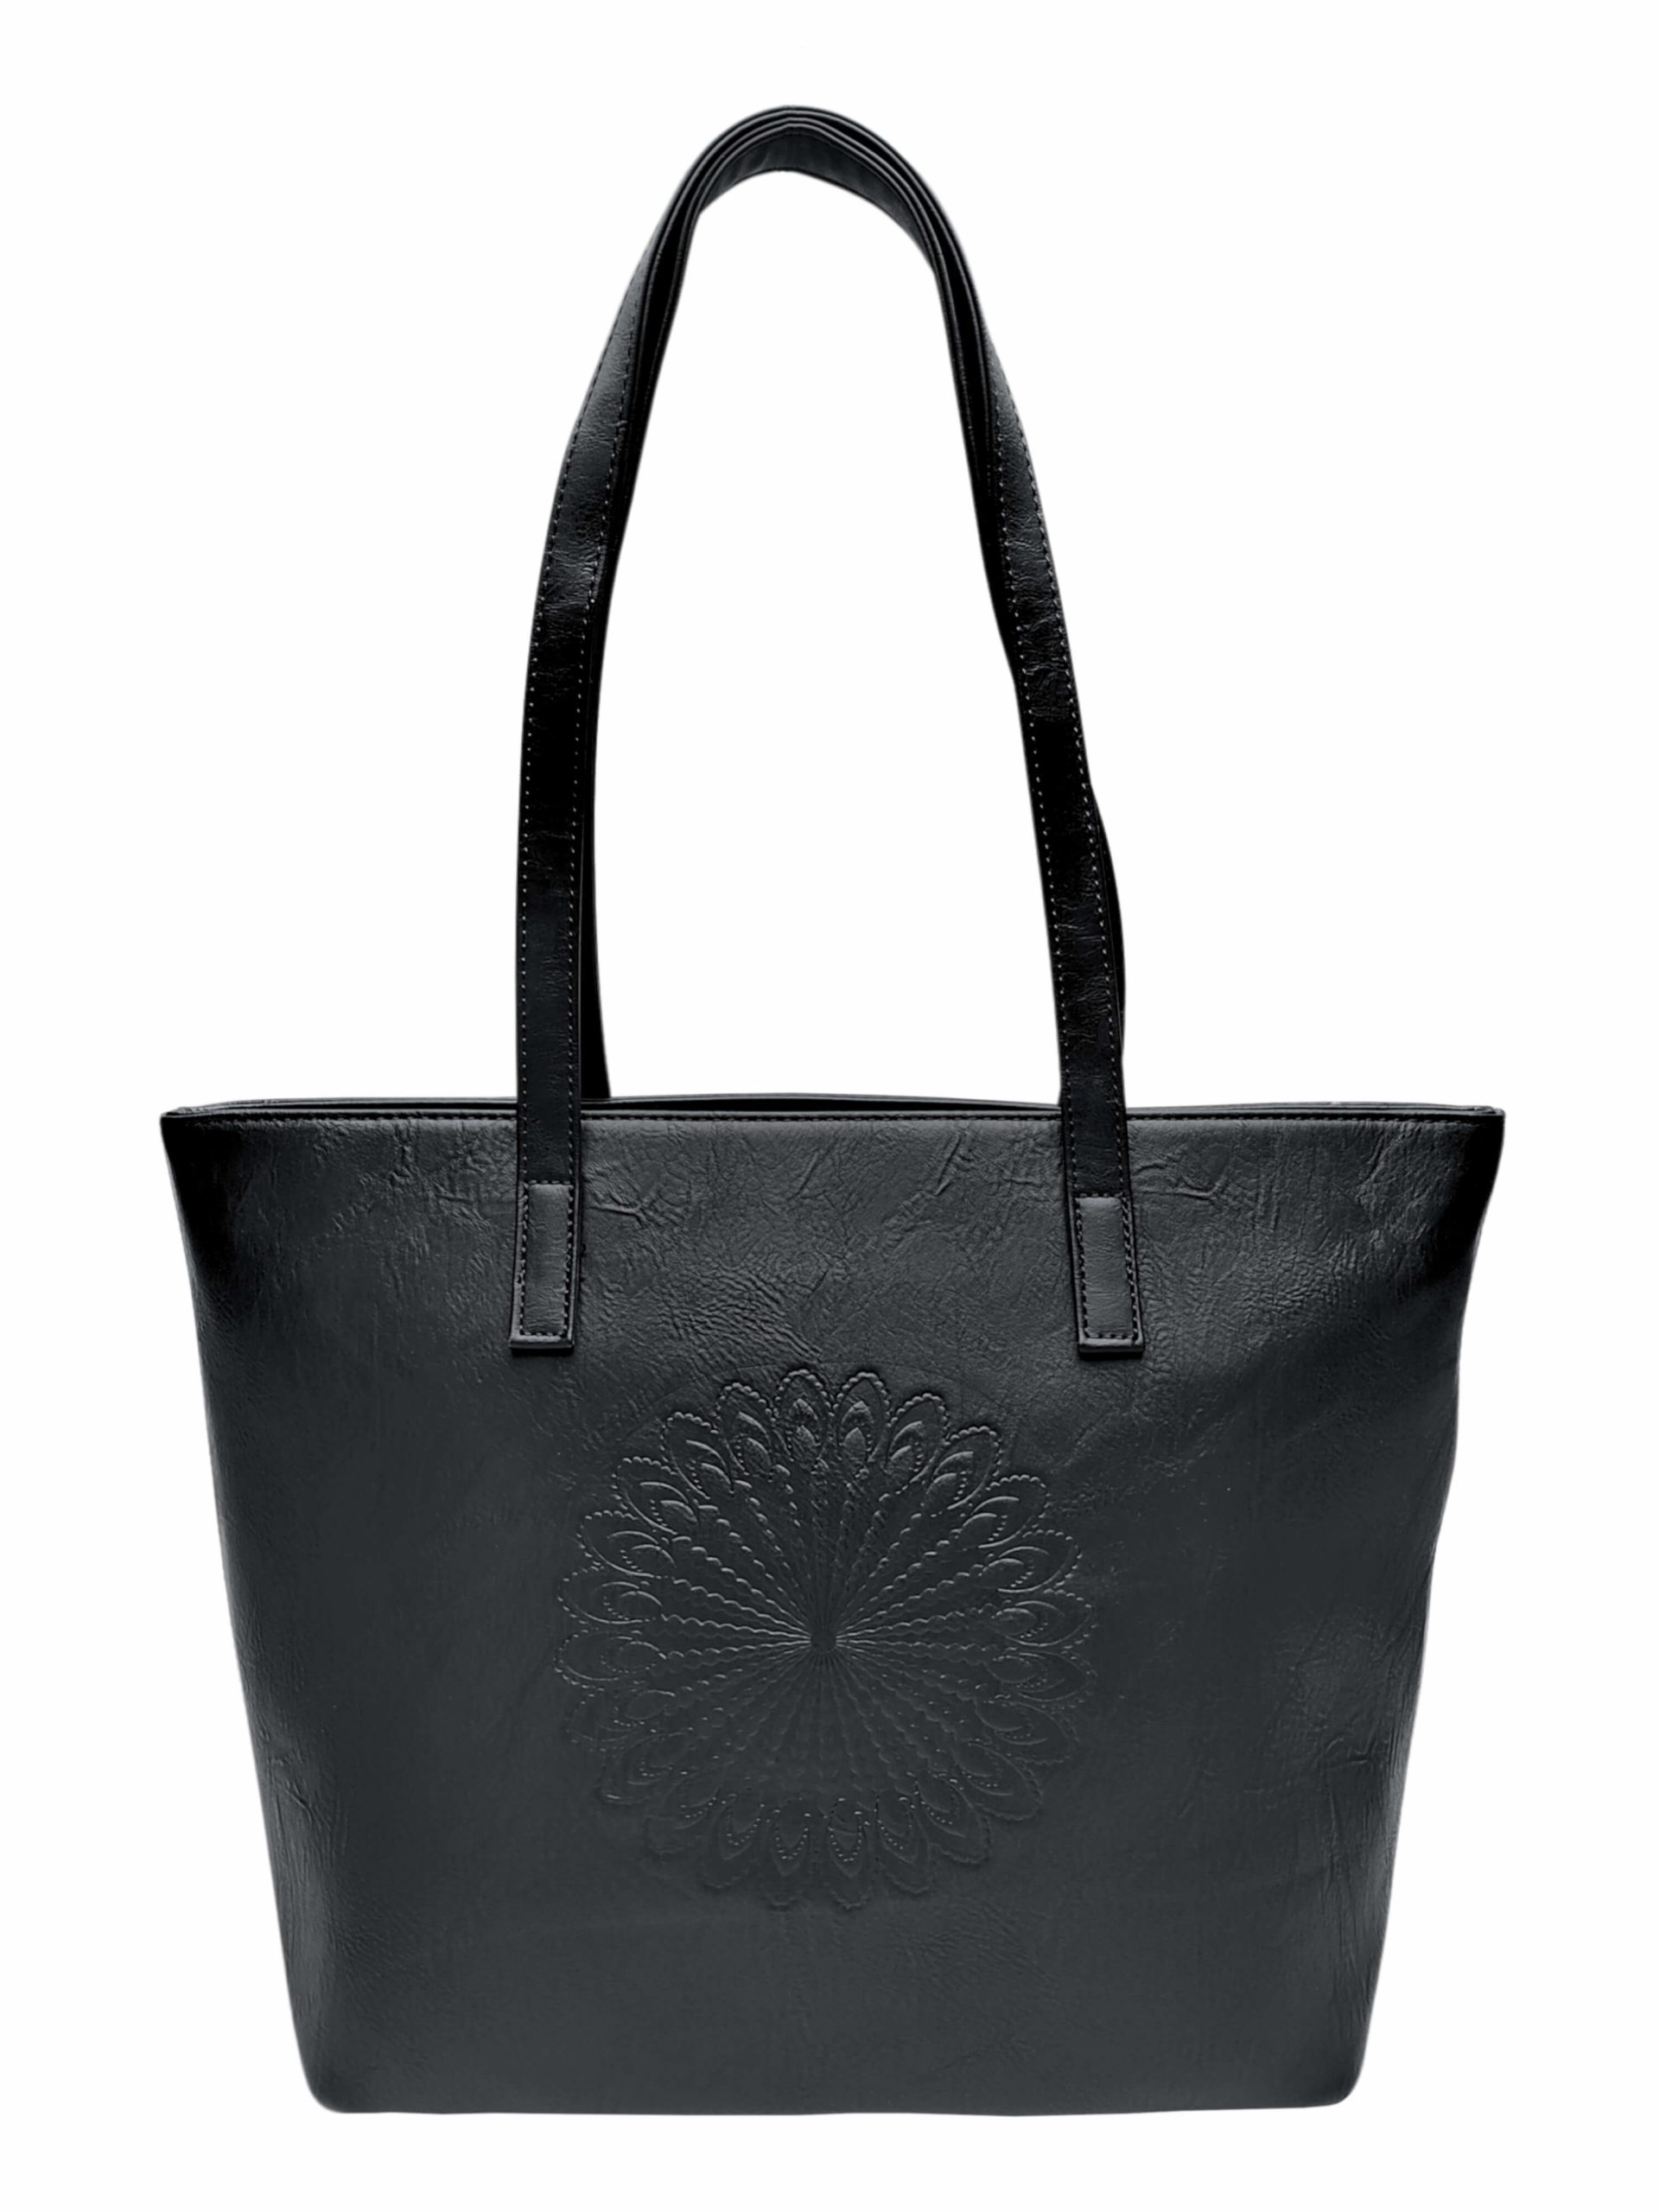 Černá dámská kabelka přes rameno se vzorem, Tapple, H17409N, zadní strana kabelky